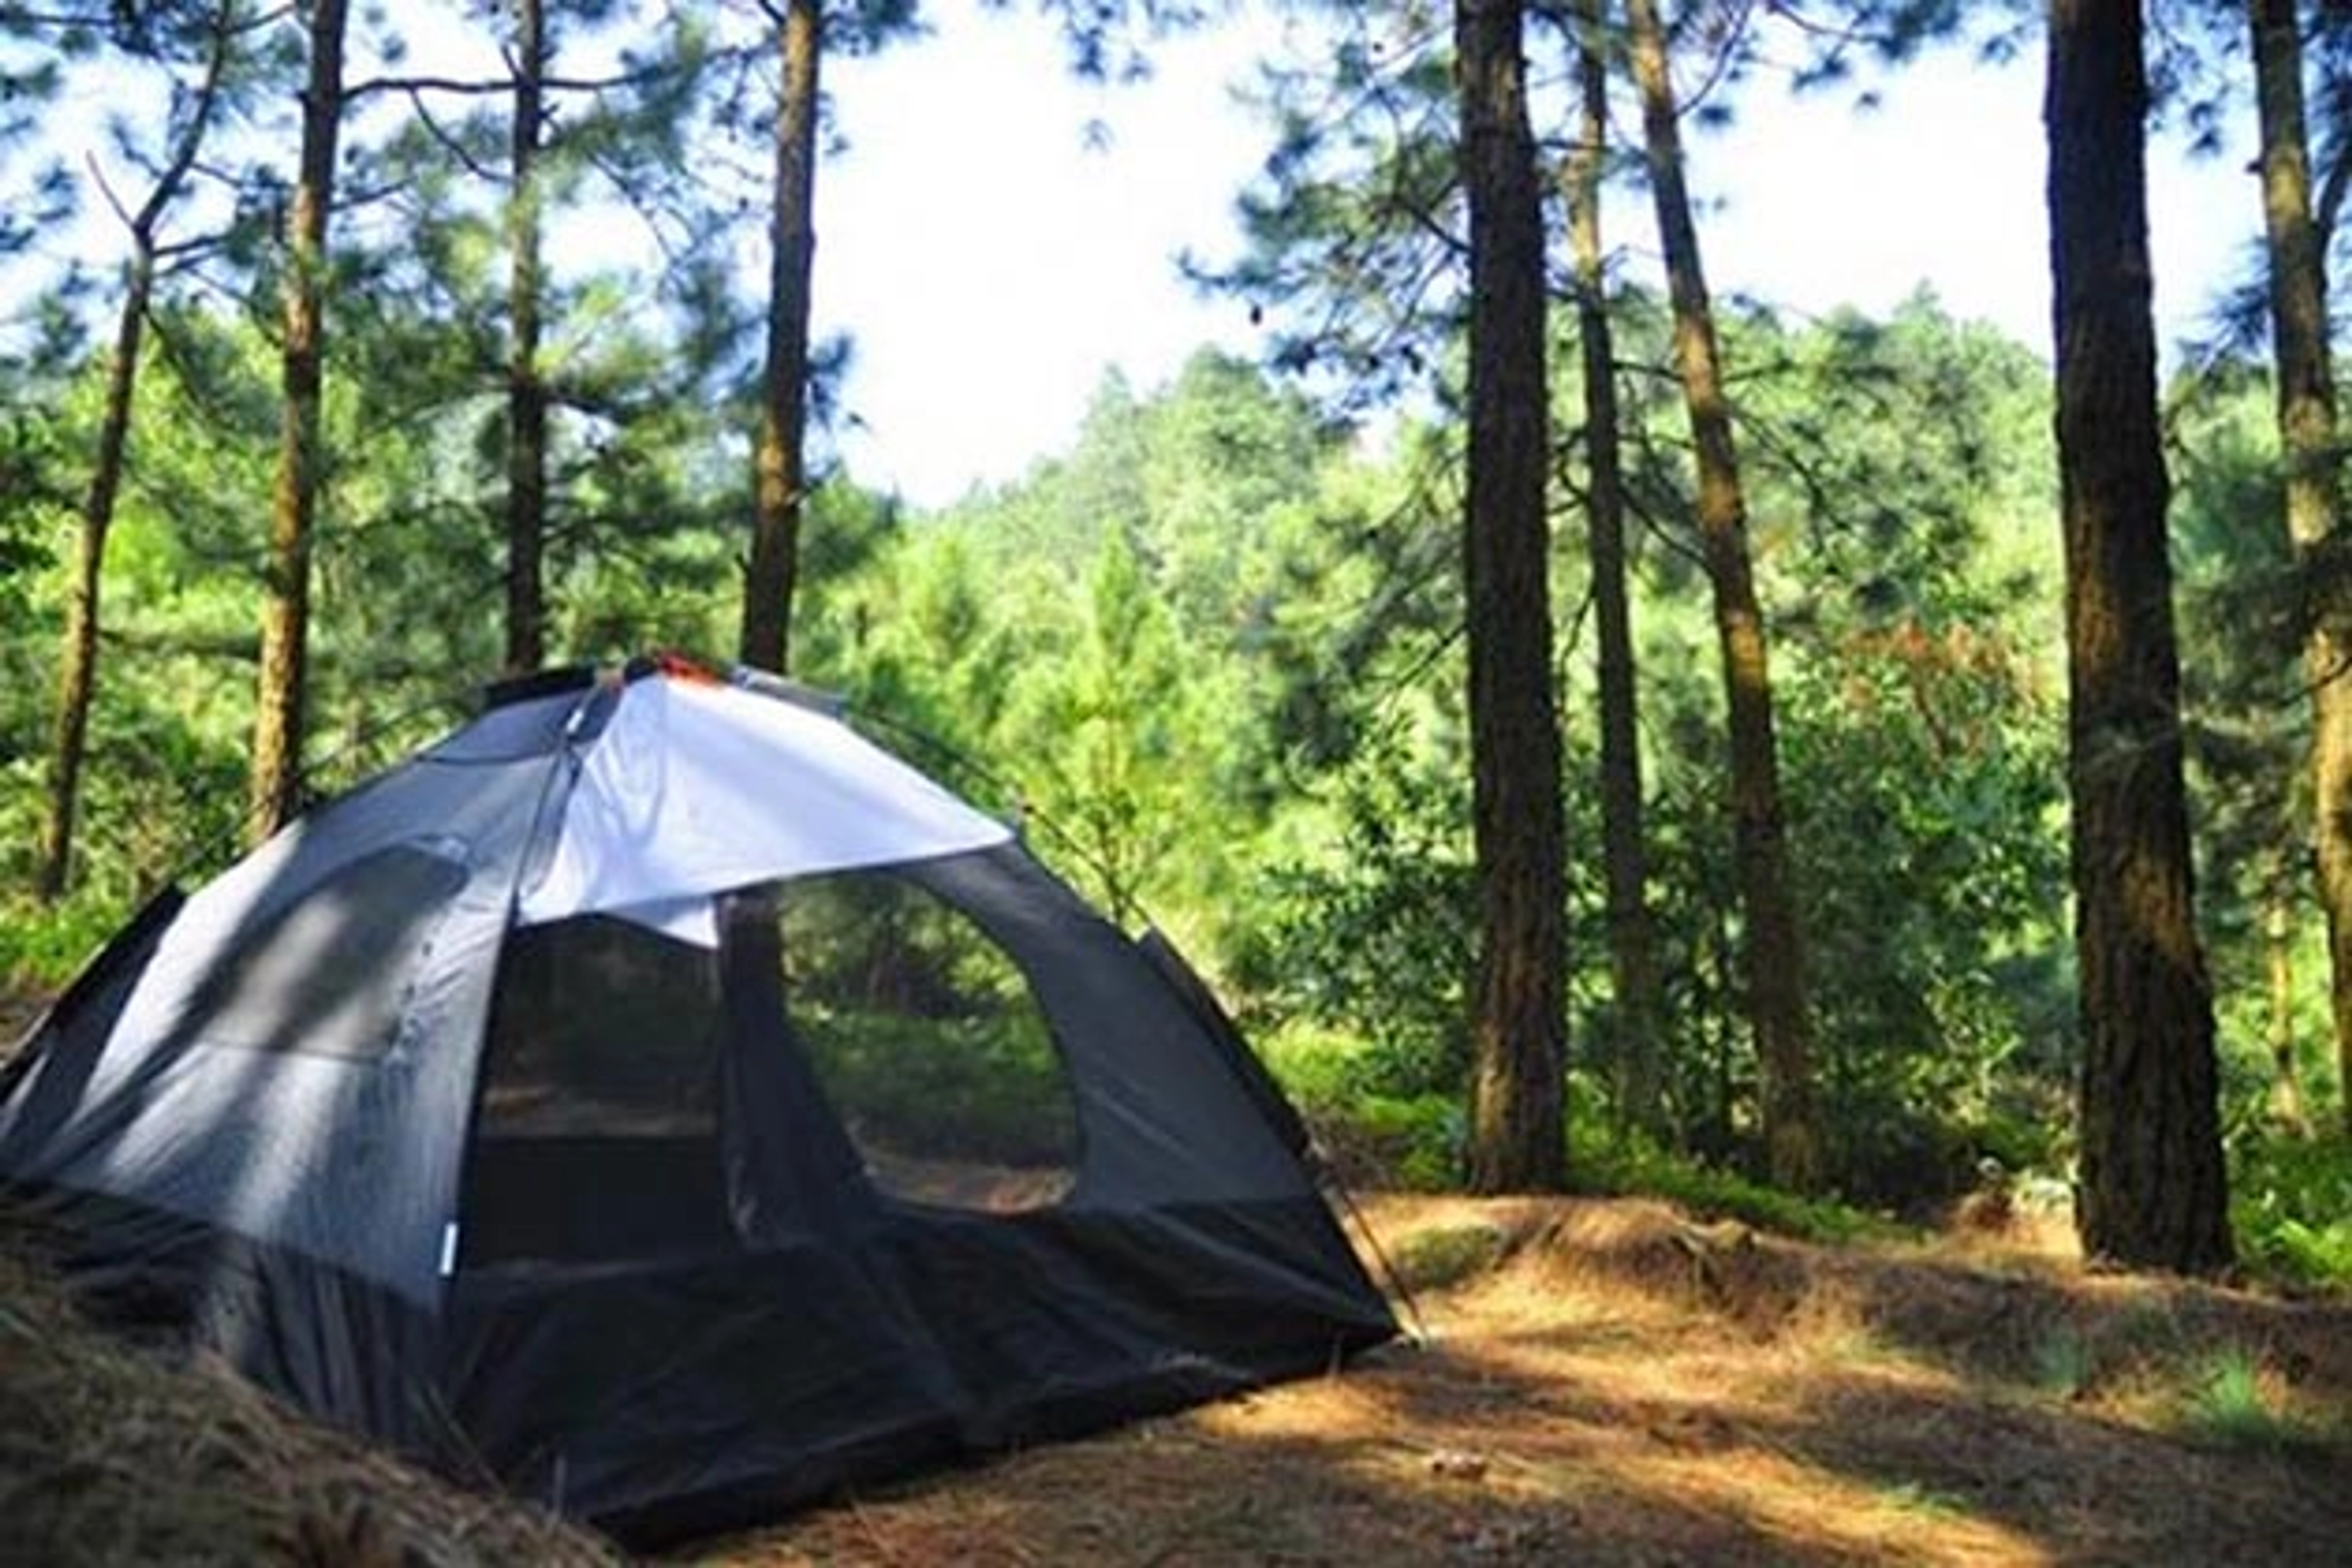 Gợi ý những địa điểm cắm trại nổi bật ở Ninh Bình